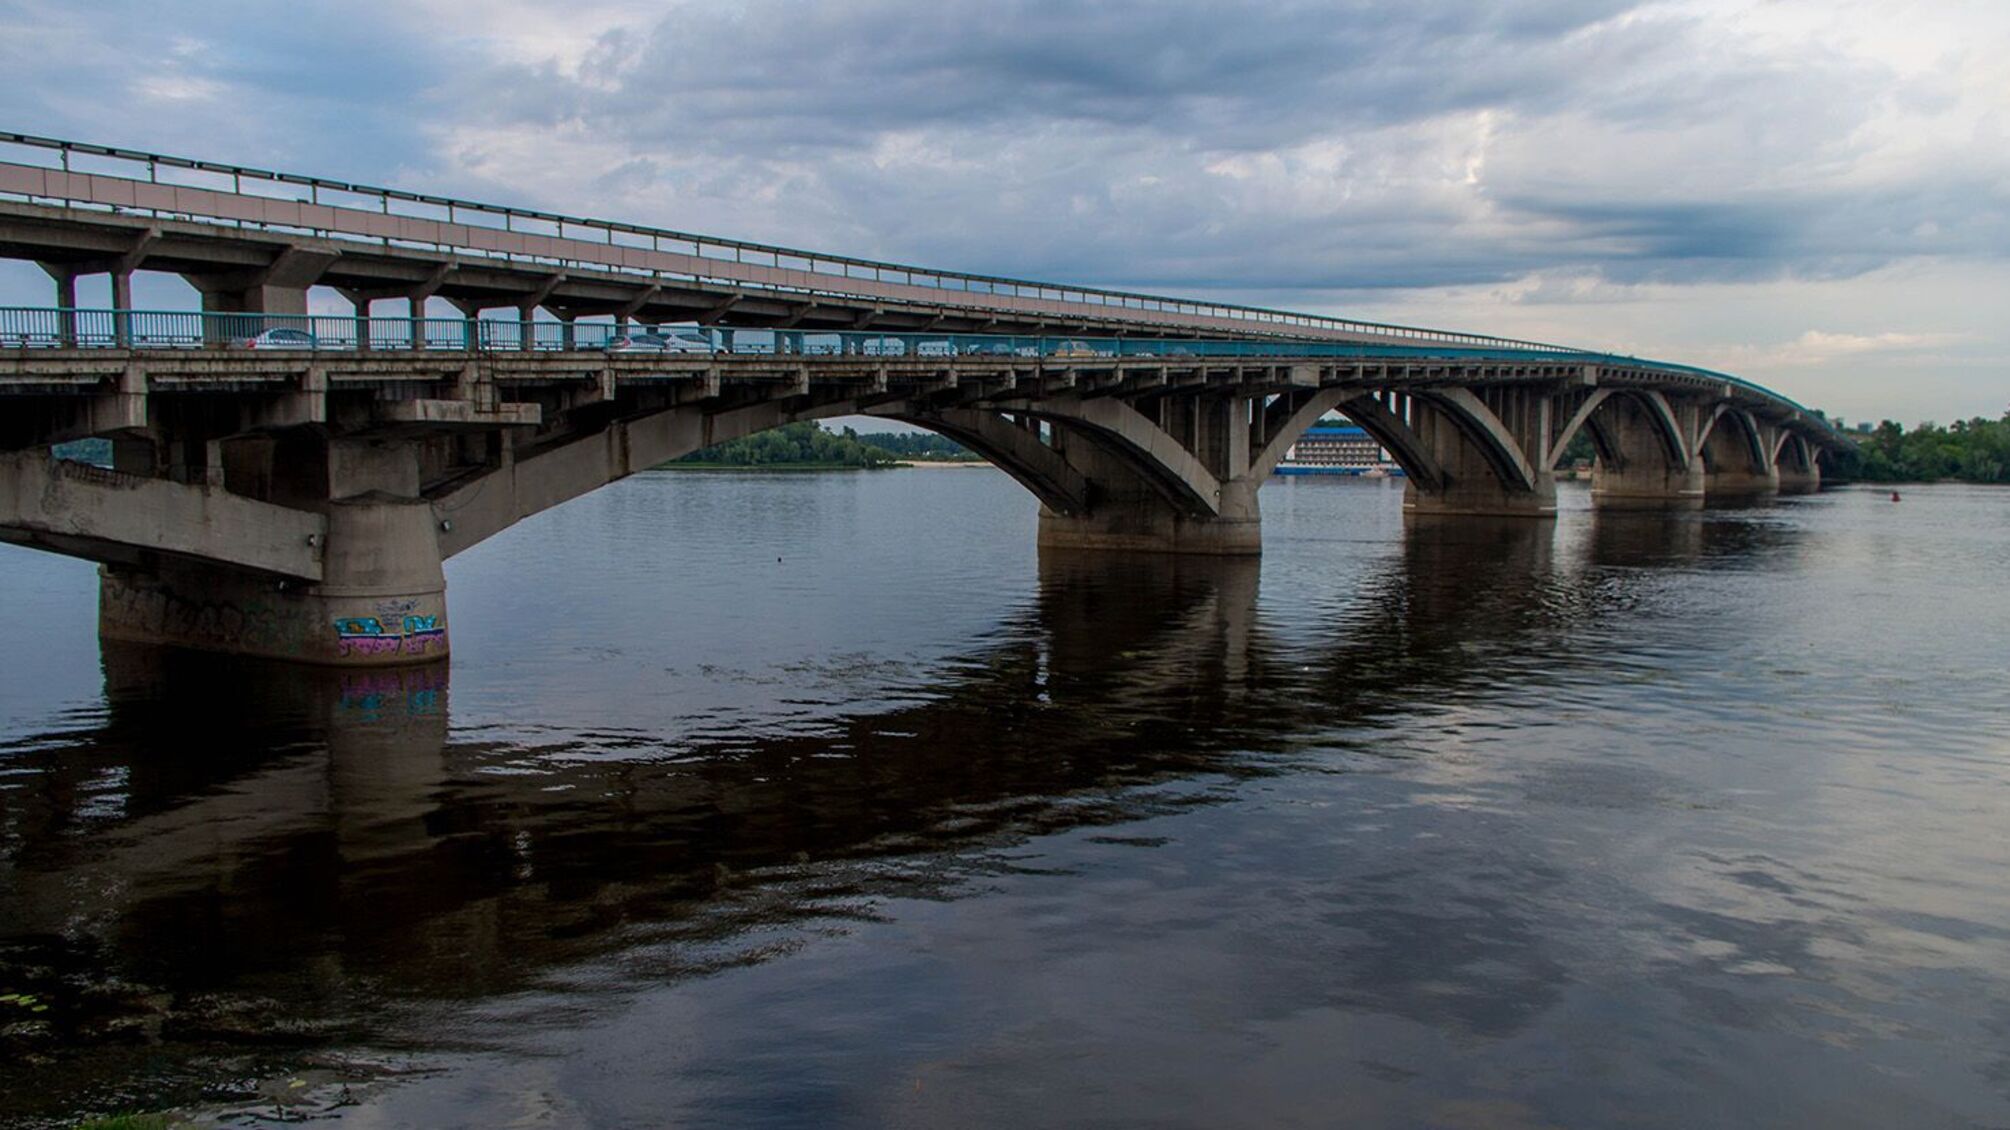 Експерт заявив, що мости у Києві можуть впасти у будь-який момент